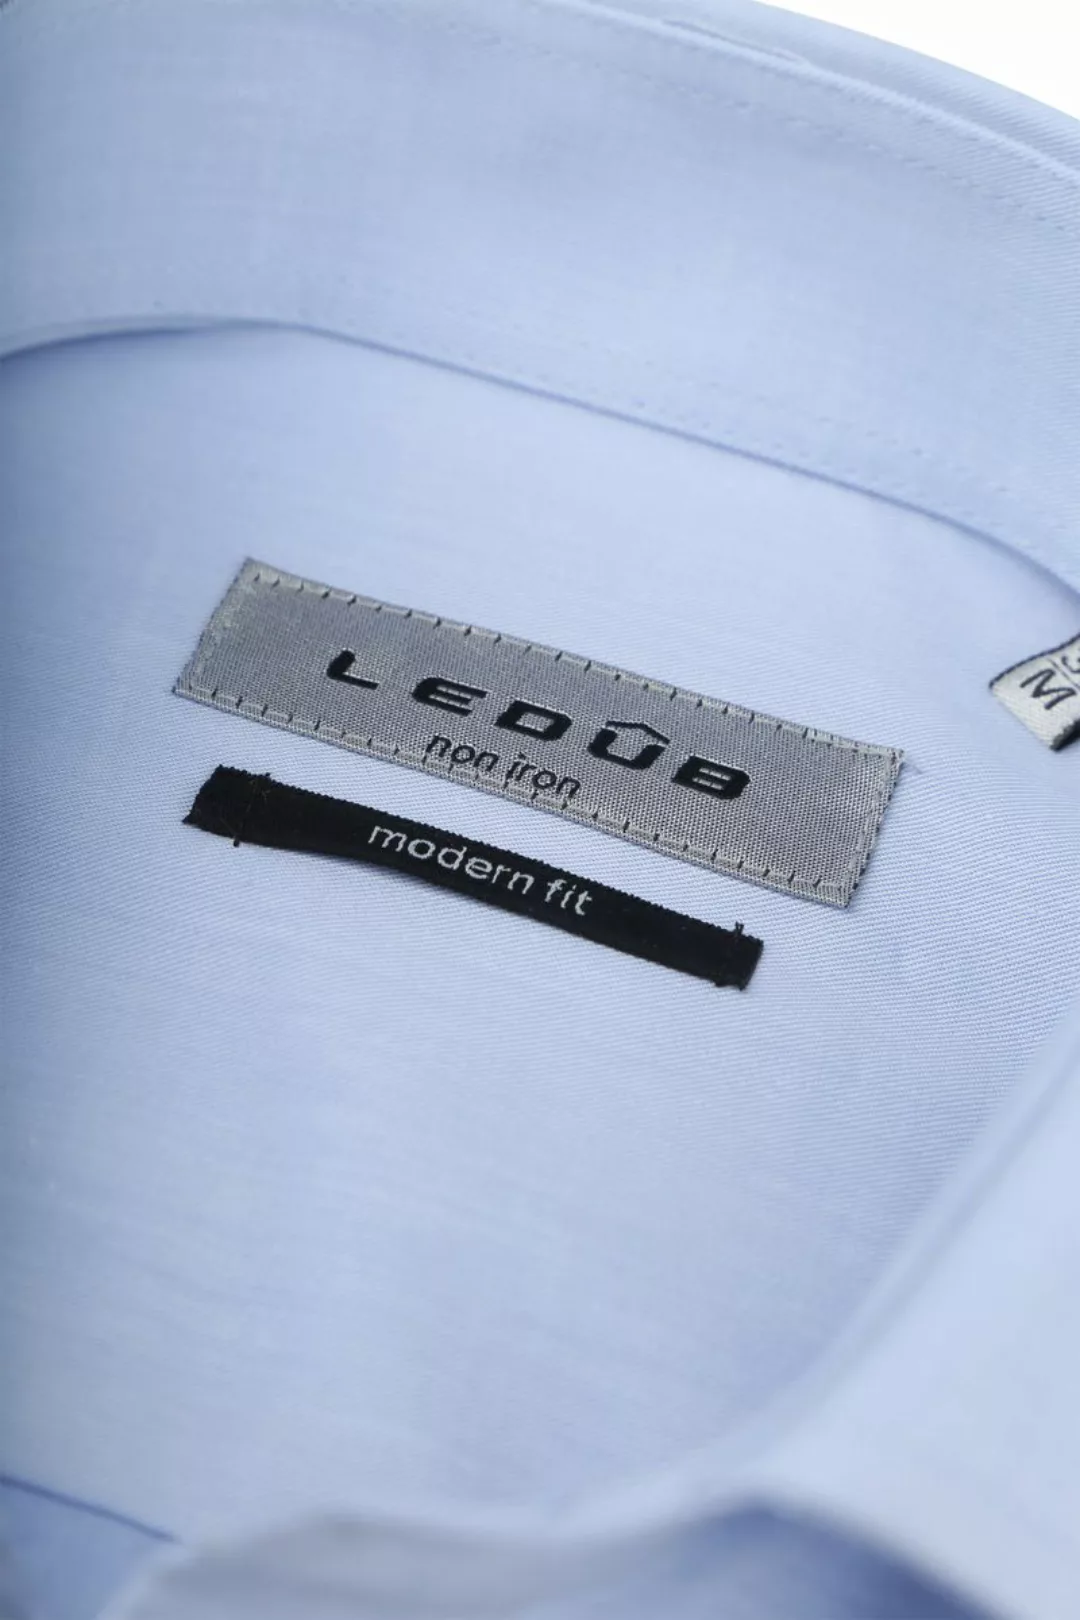 Ledub Hemd Hellblau Brusttassche - Größe 39 günstig online kaufen